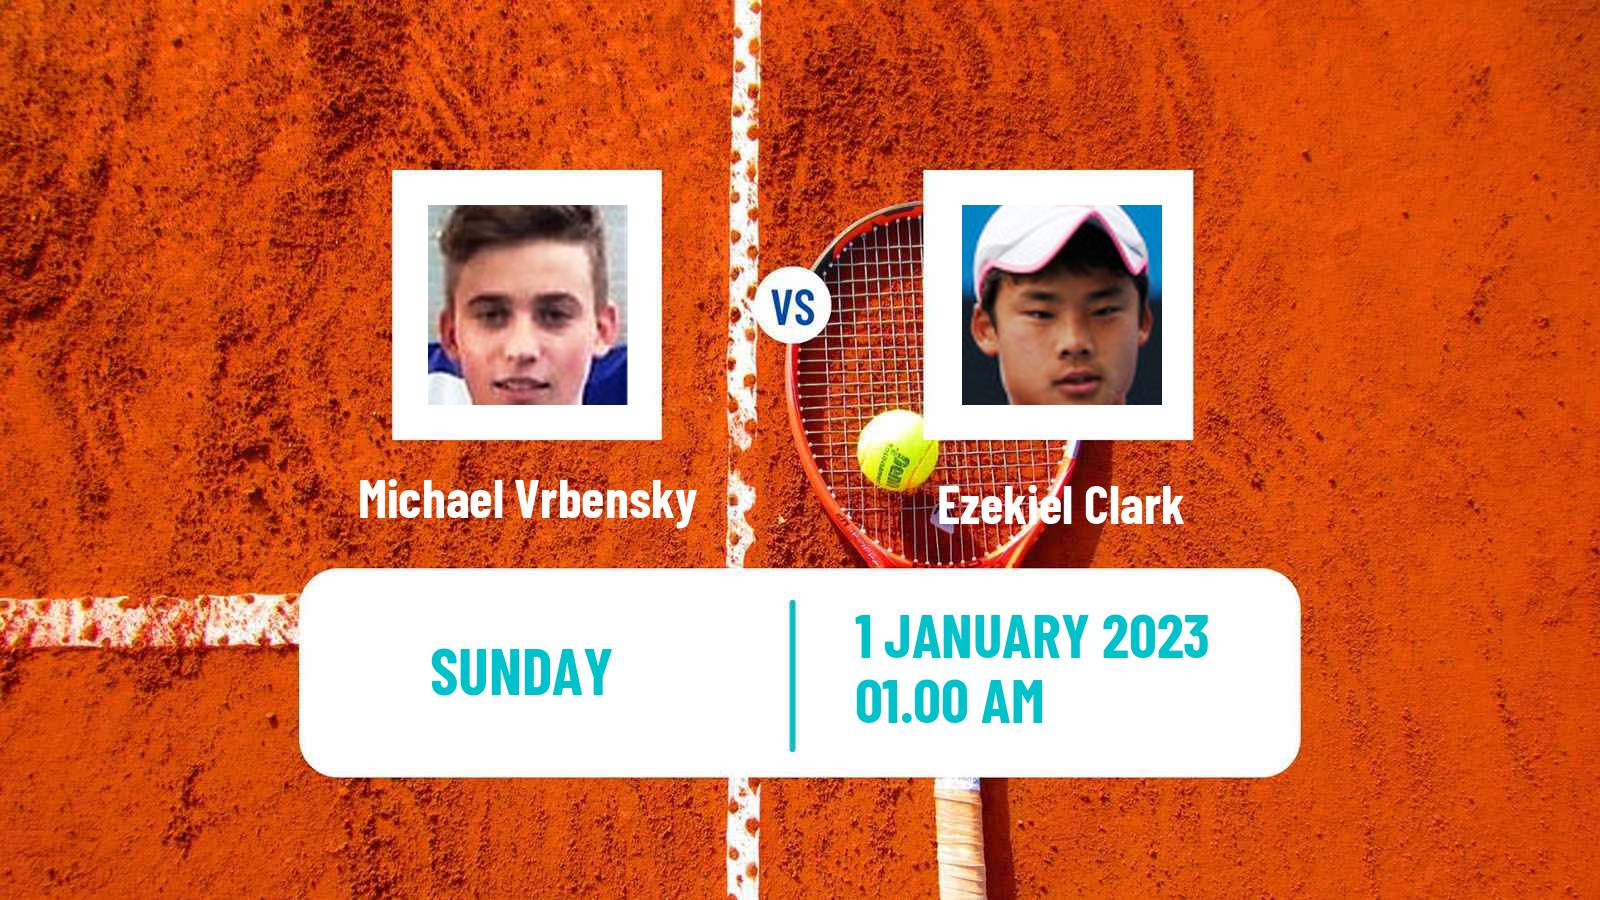 Tennis ATP Challenger Michael Vrbensky - Ezekiel Clark